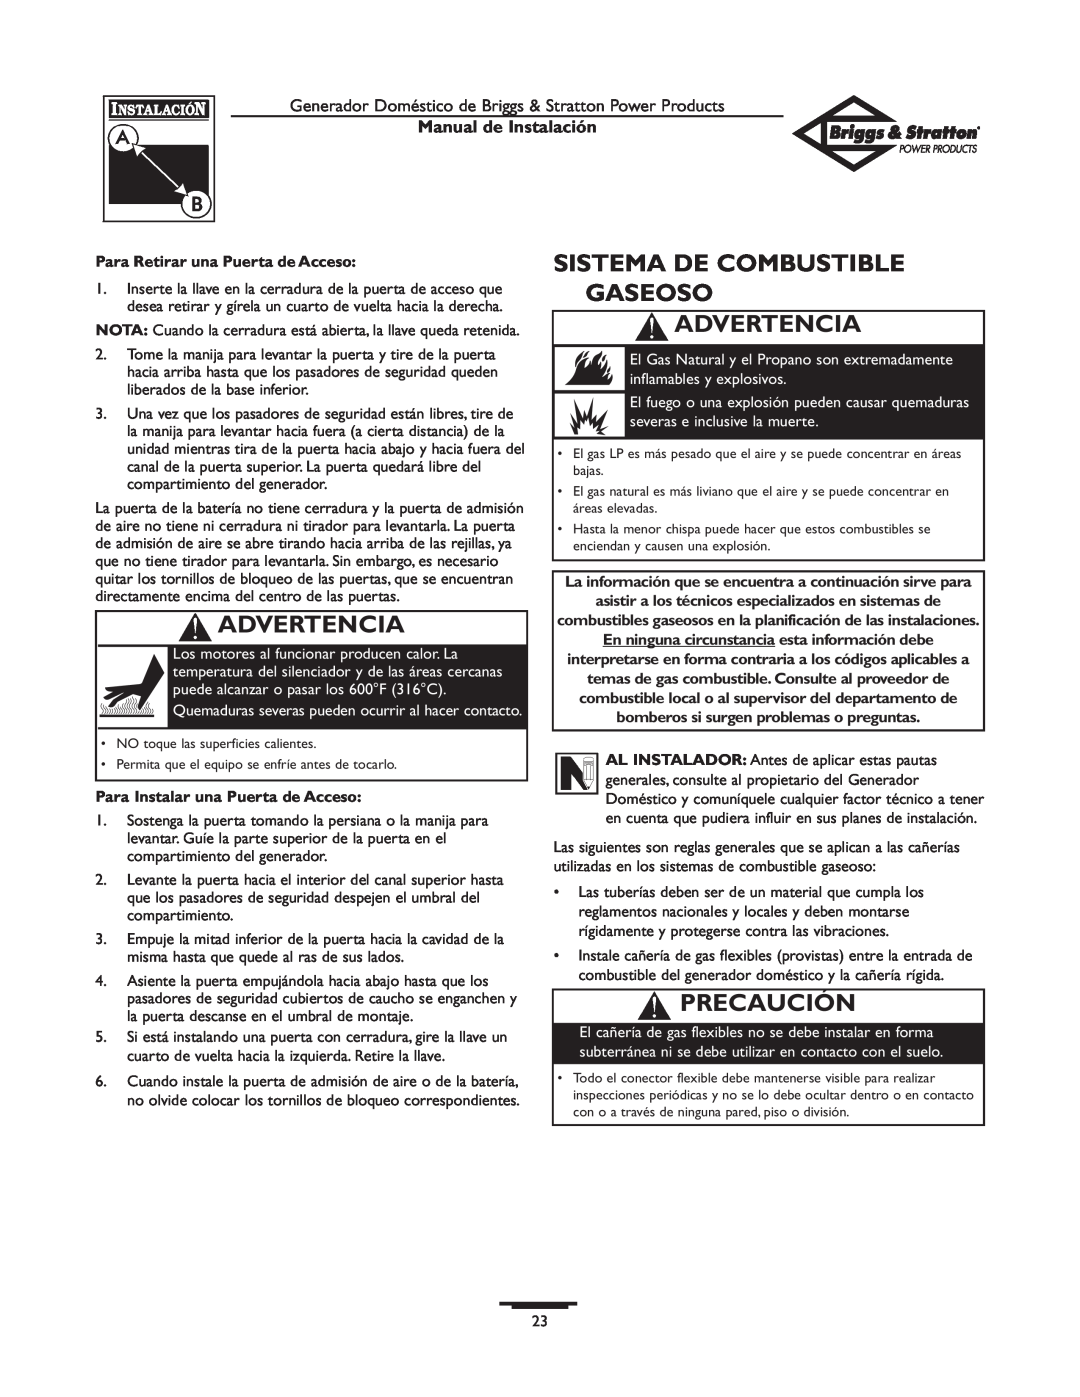 Briggs & Stratton 01938-0 manual Sistema De Combustible Gaseoso Advertencia, Precaución, Manual de Instalación 